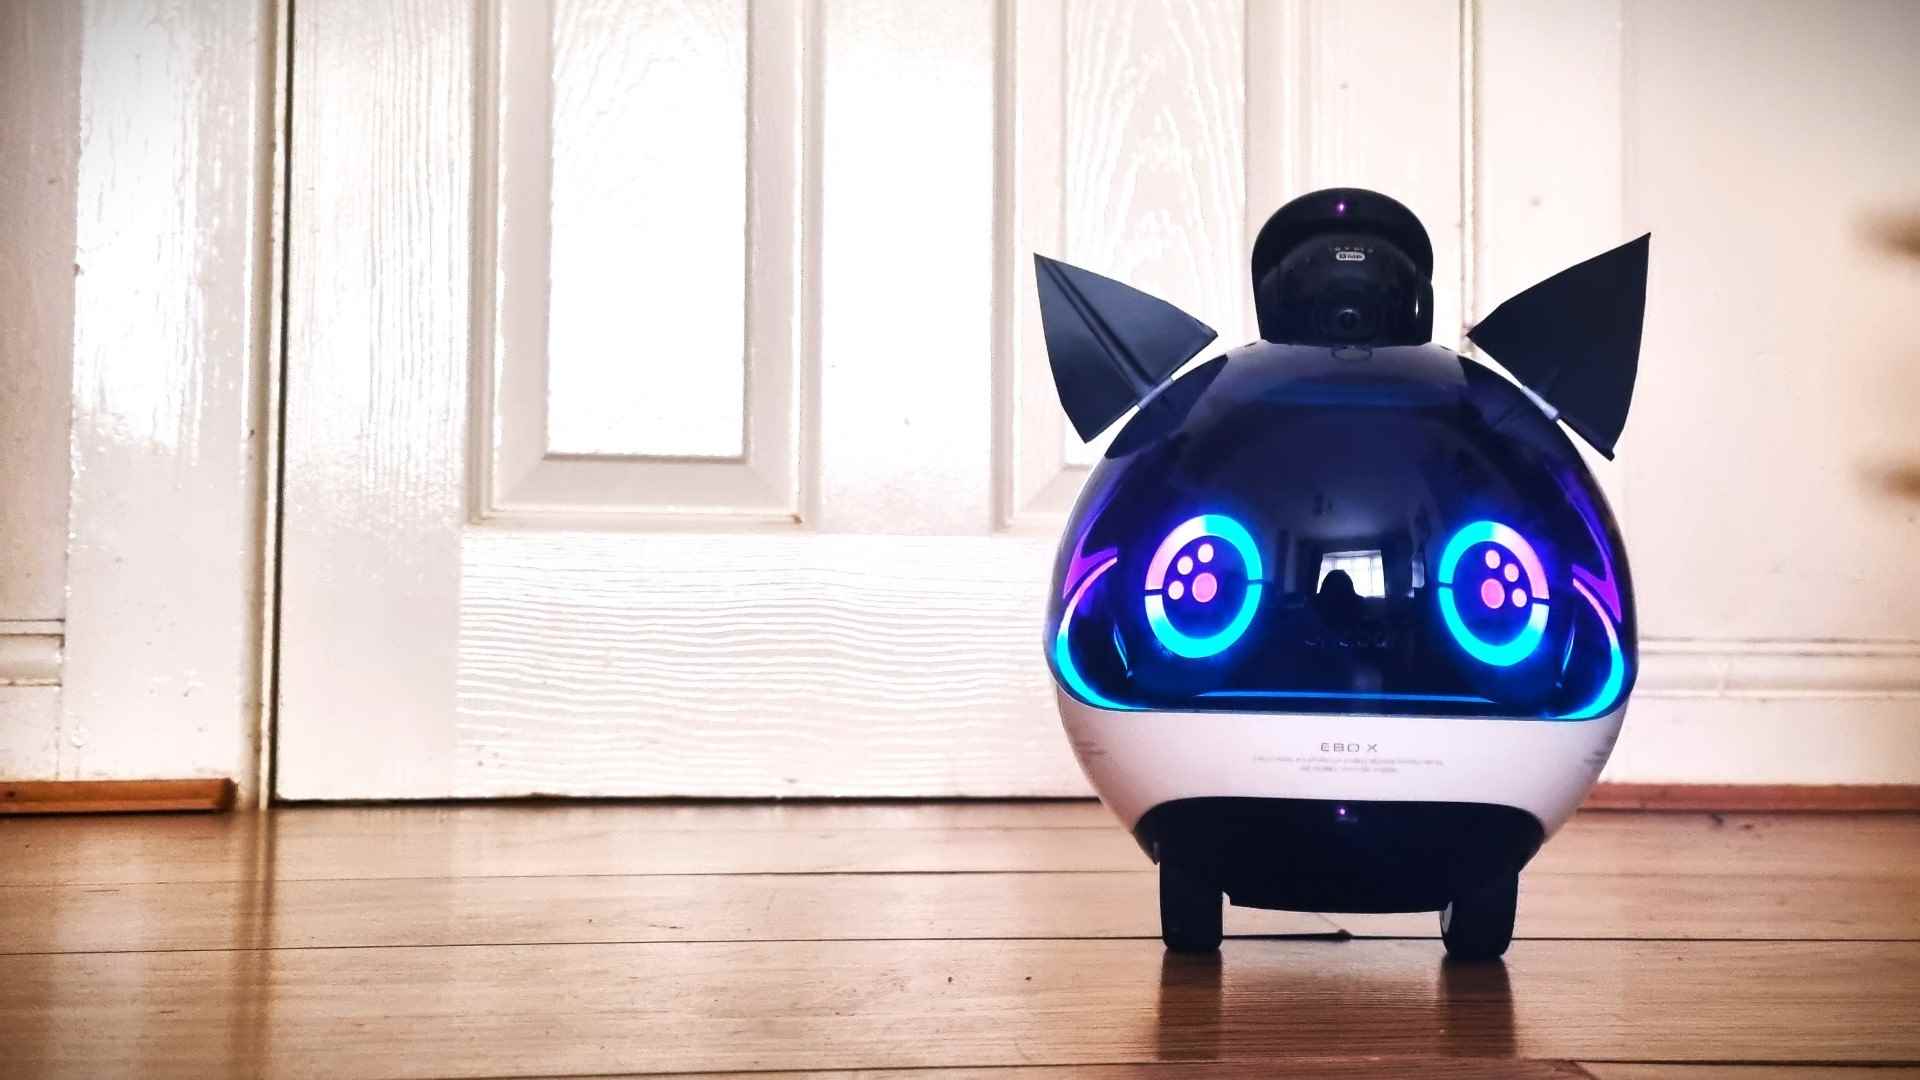 Kedi kulaklı Ebo-X Robot, Hi-Fi Rush'tan 808 gibi görünecek